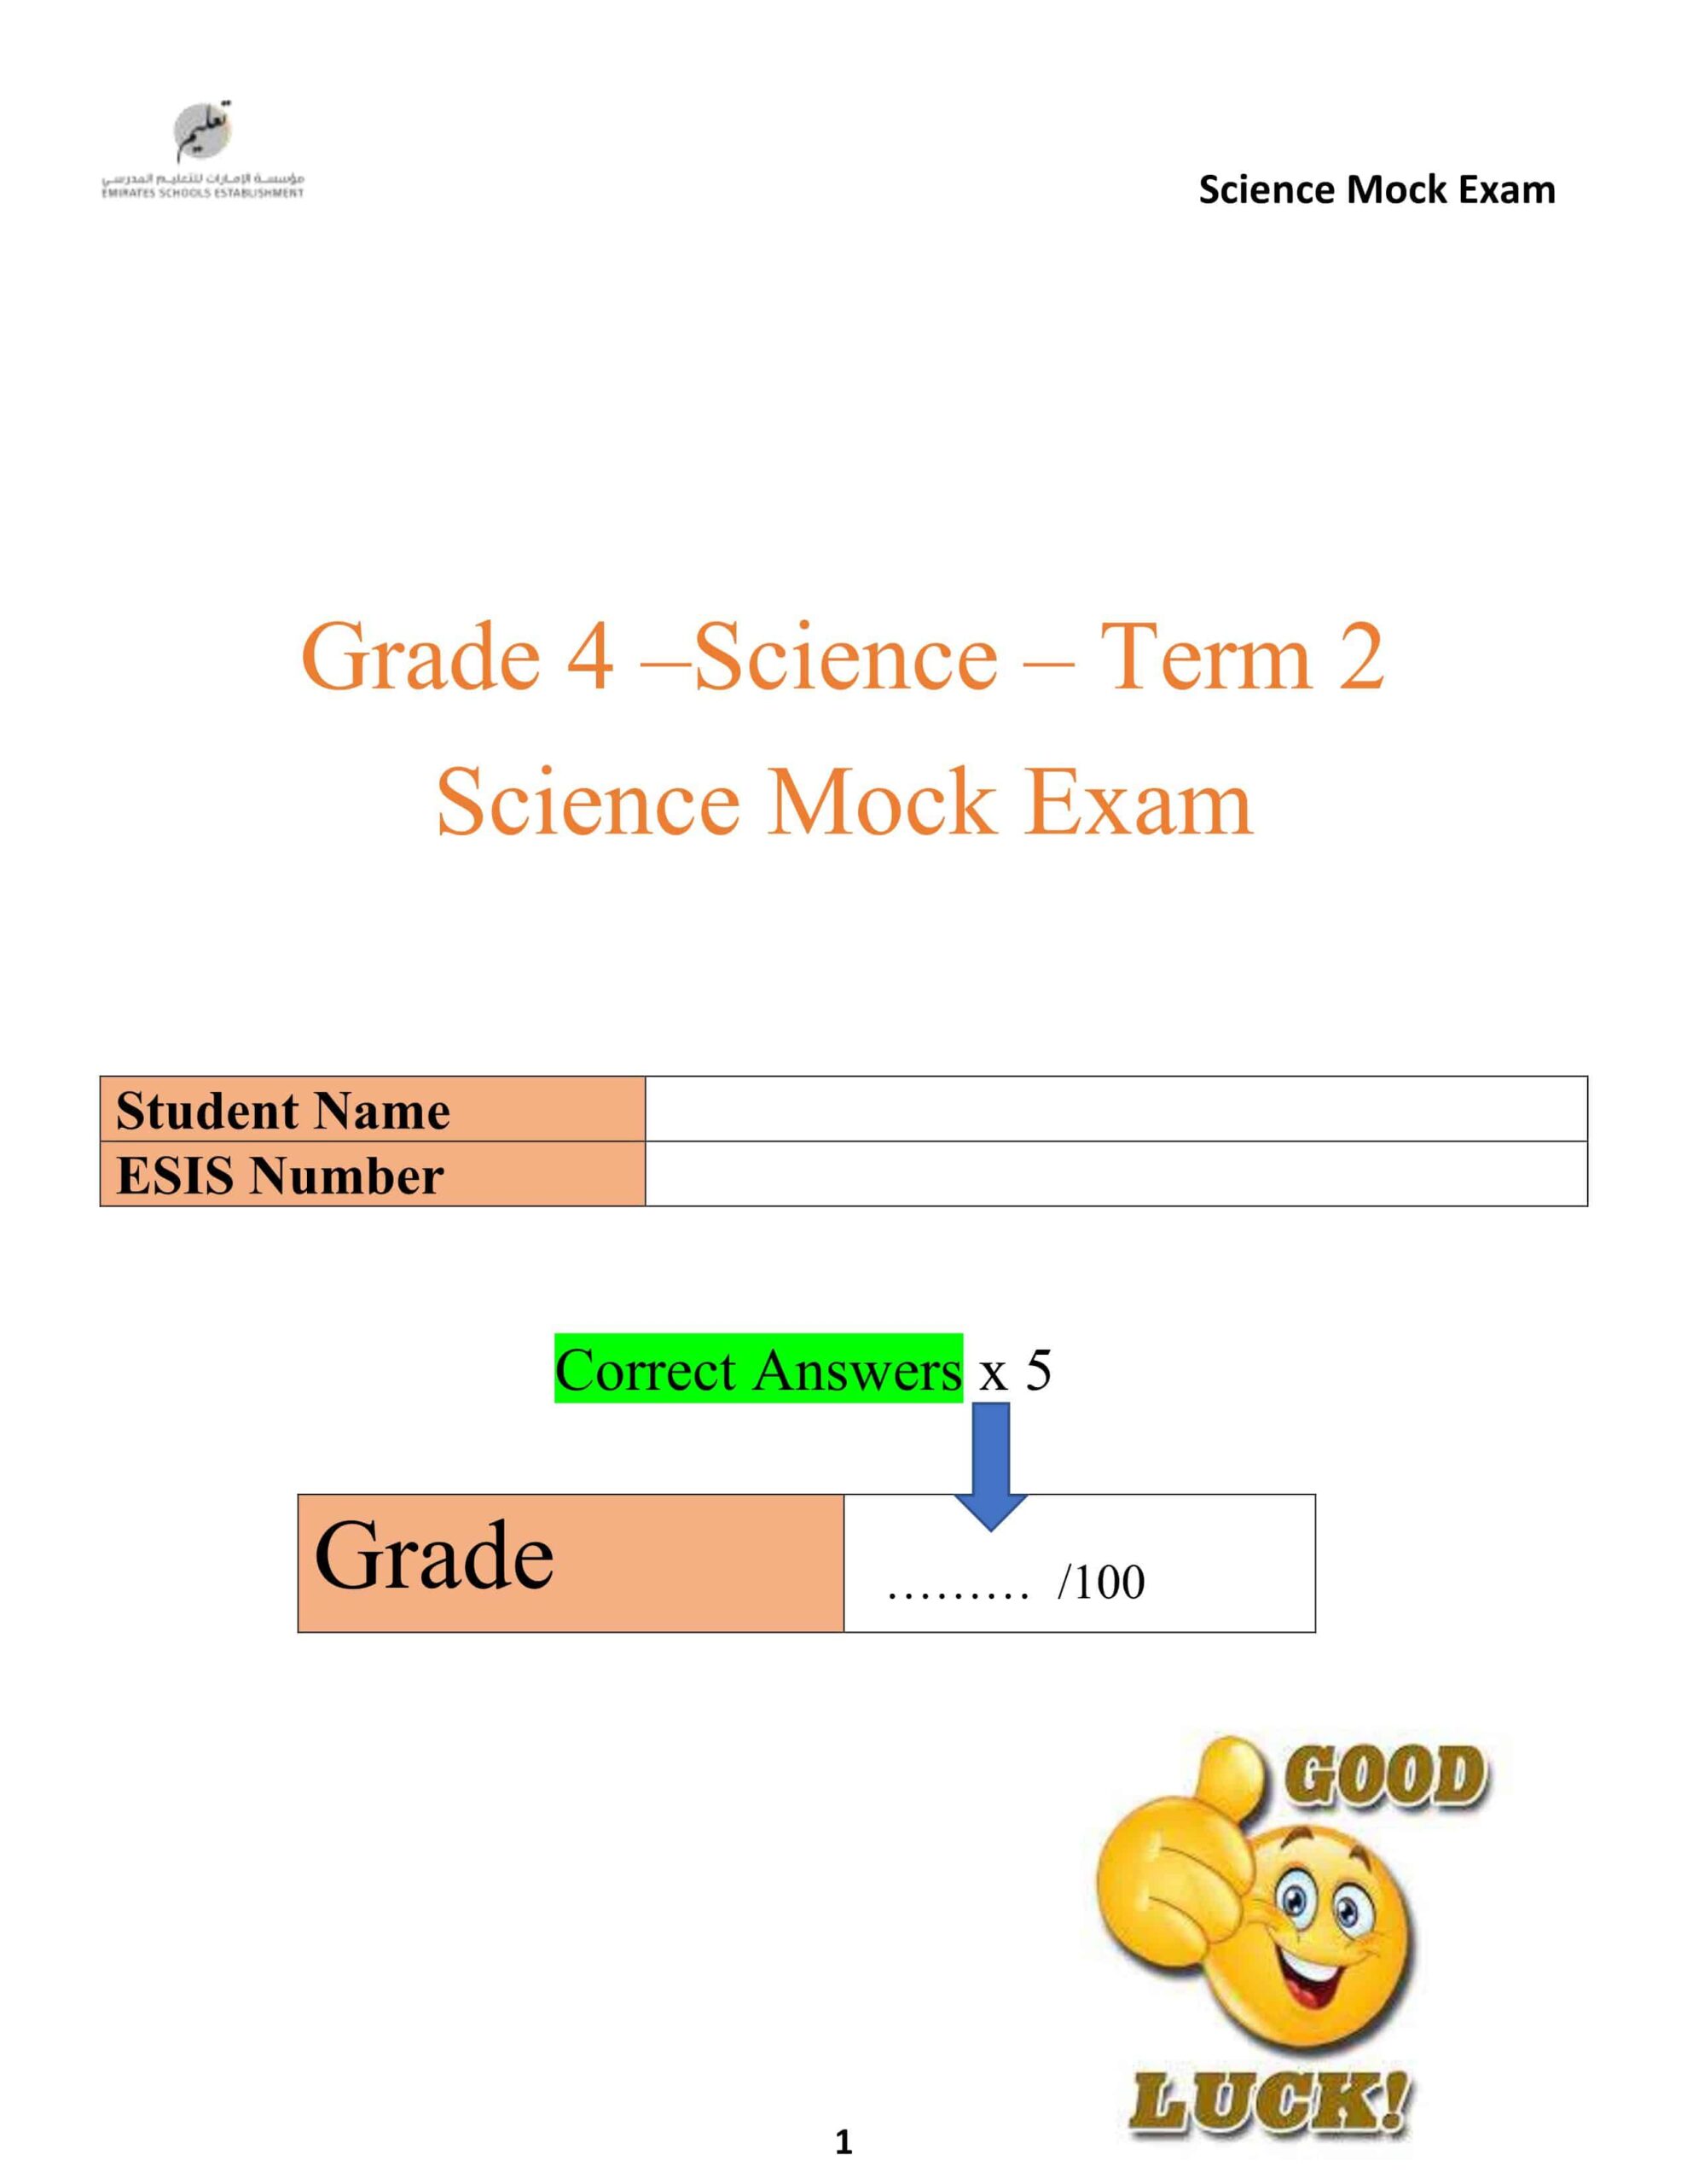 حل أوراق عمل Mock Exam العلوم المتكاملة الصف الرابع